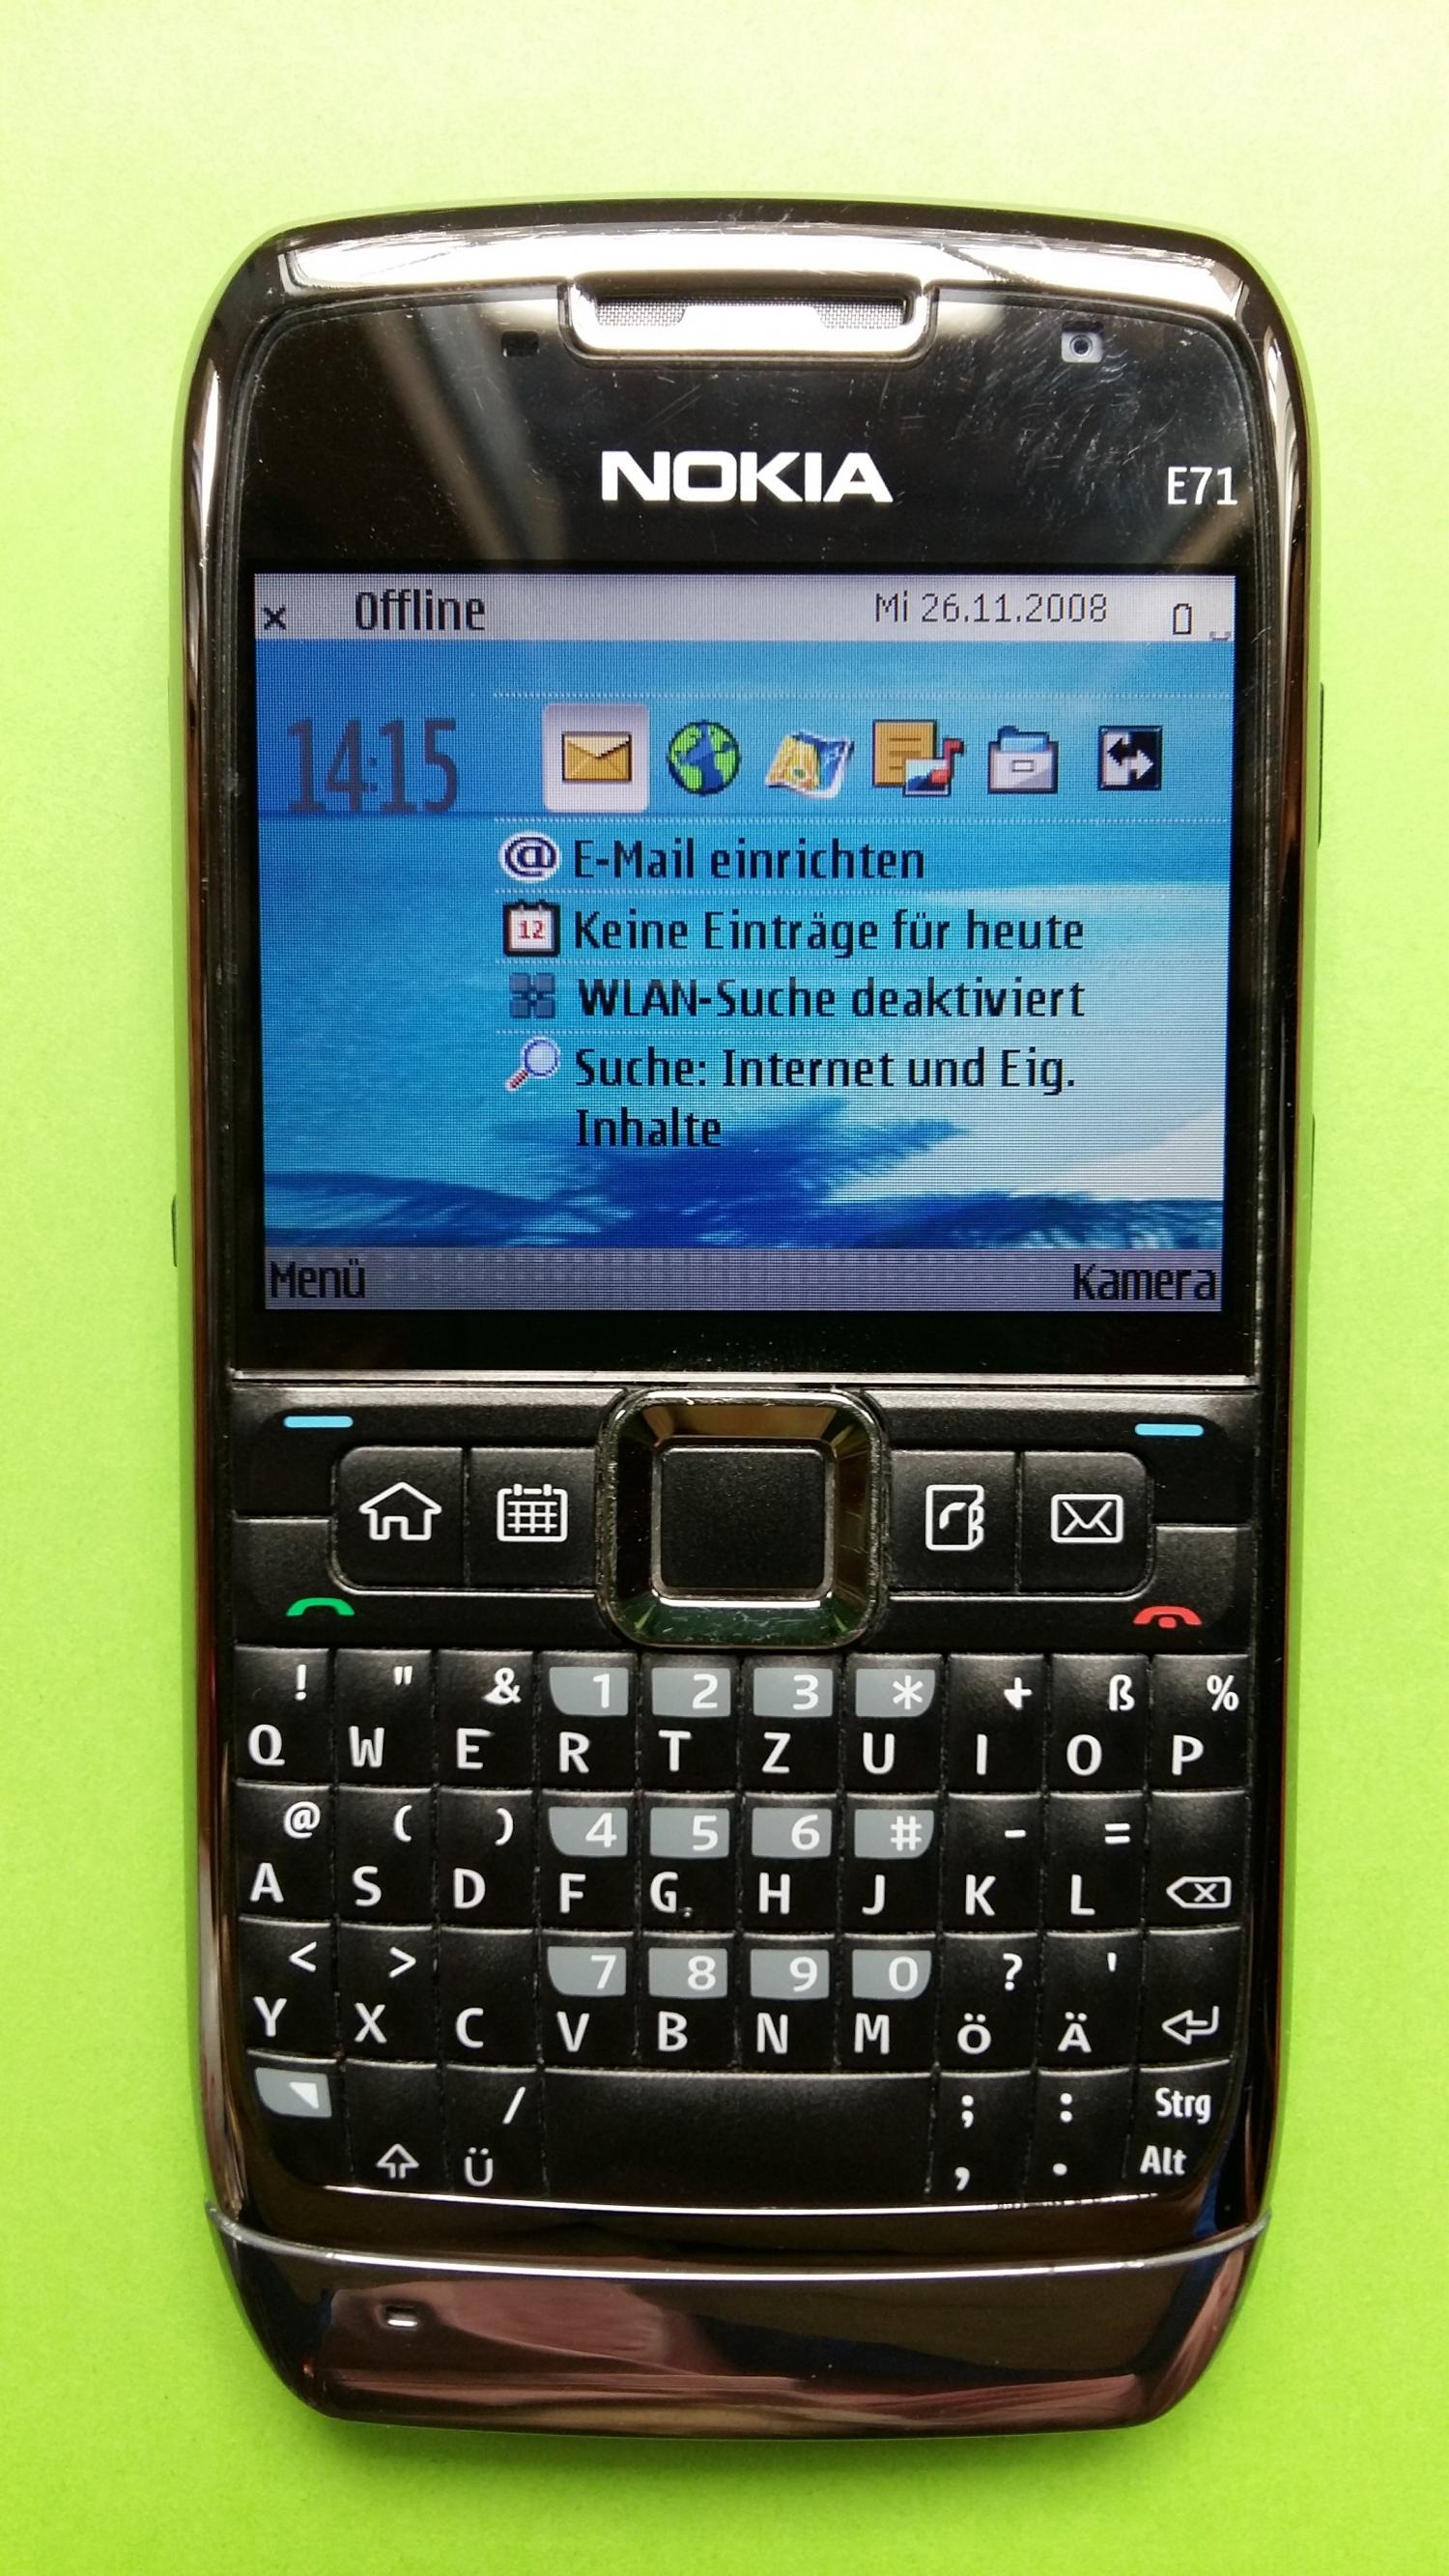 image-7307747-Nokia E71-1 (2)1.jpg